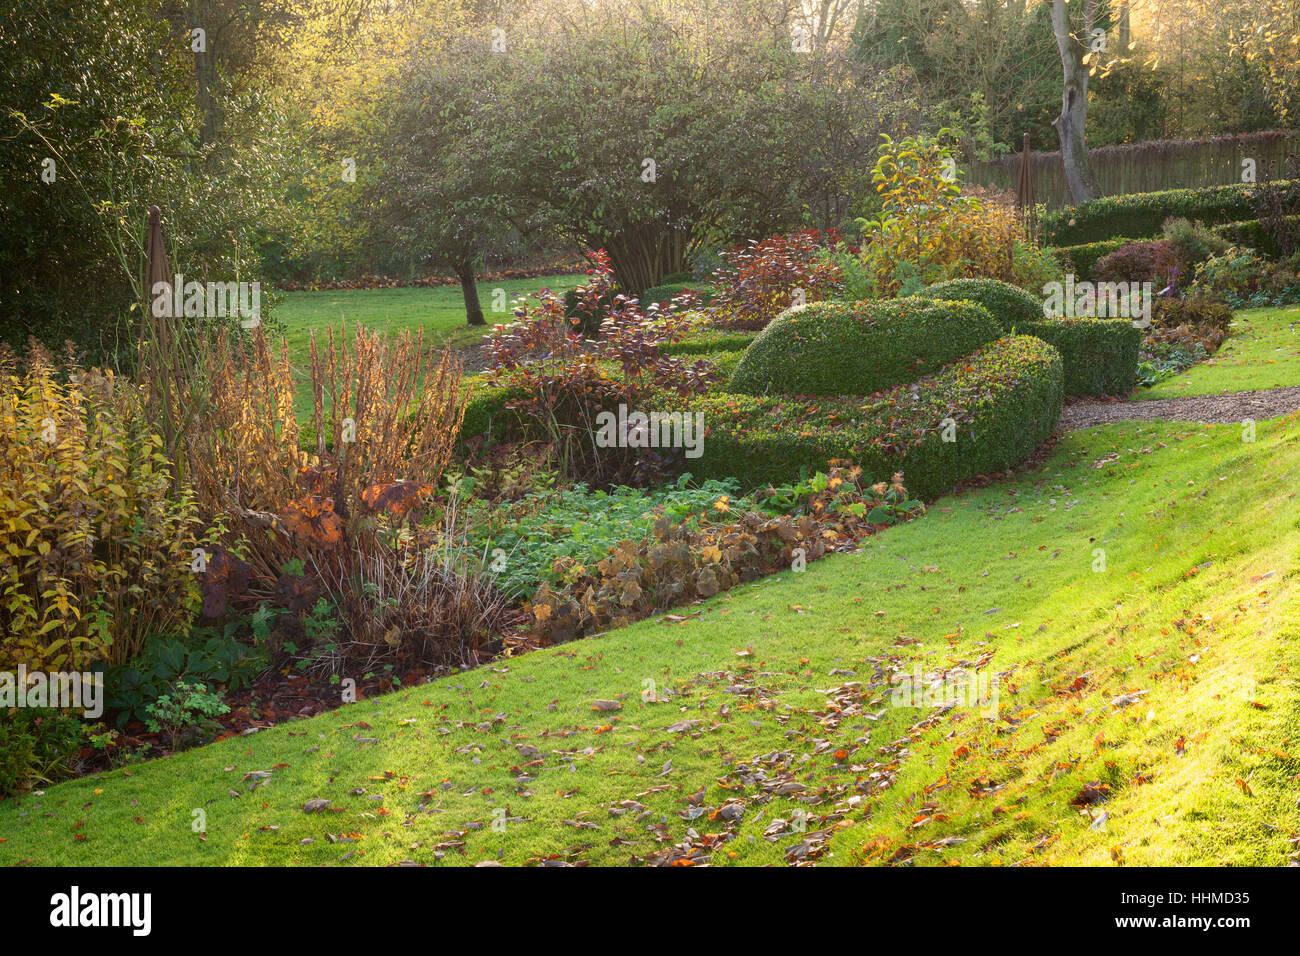 Fawley House Garden. Novembre 2016. Tiered 2.5 acri di giardino con prati, alberi maturi, formale di copertura, stream e sentieri di ghiaia. Foto Stock